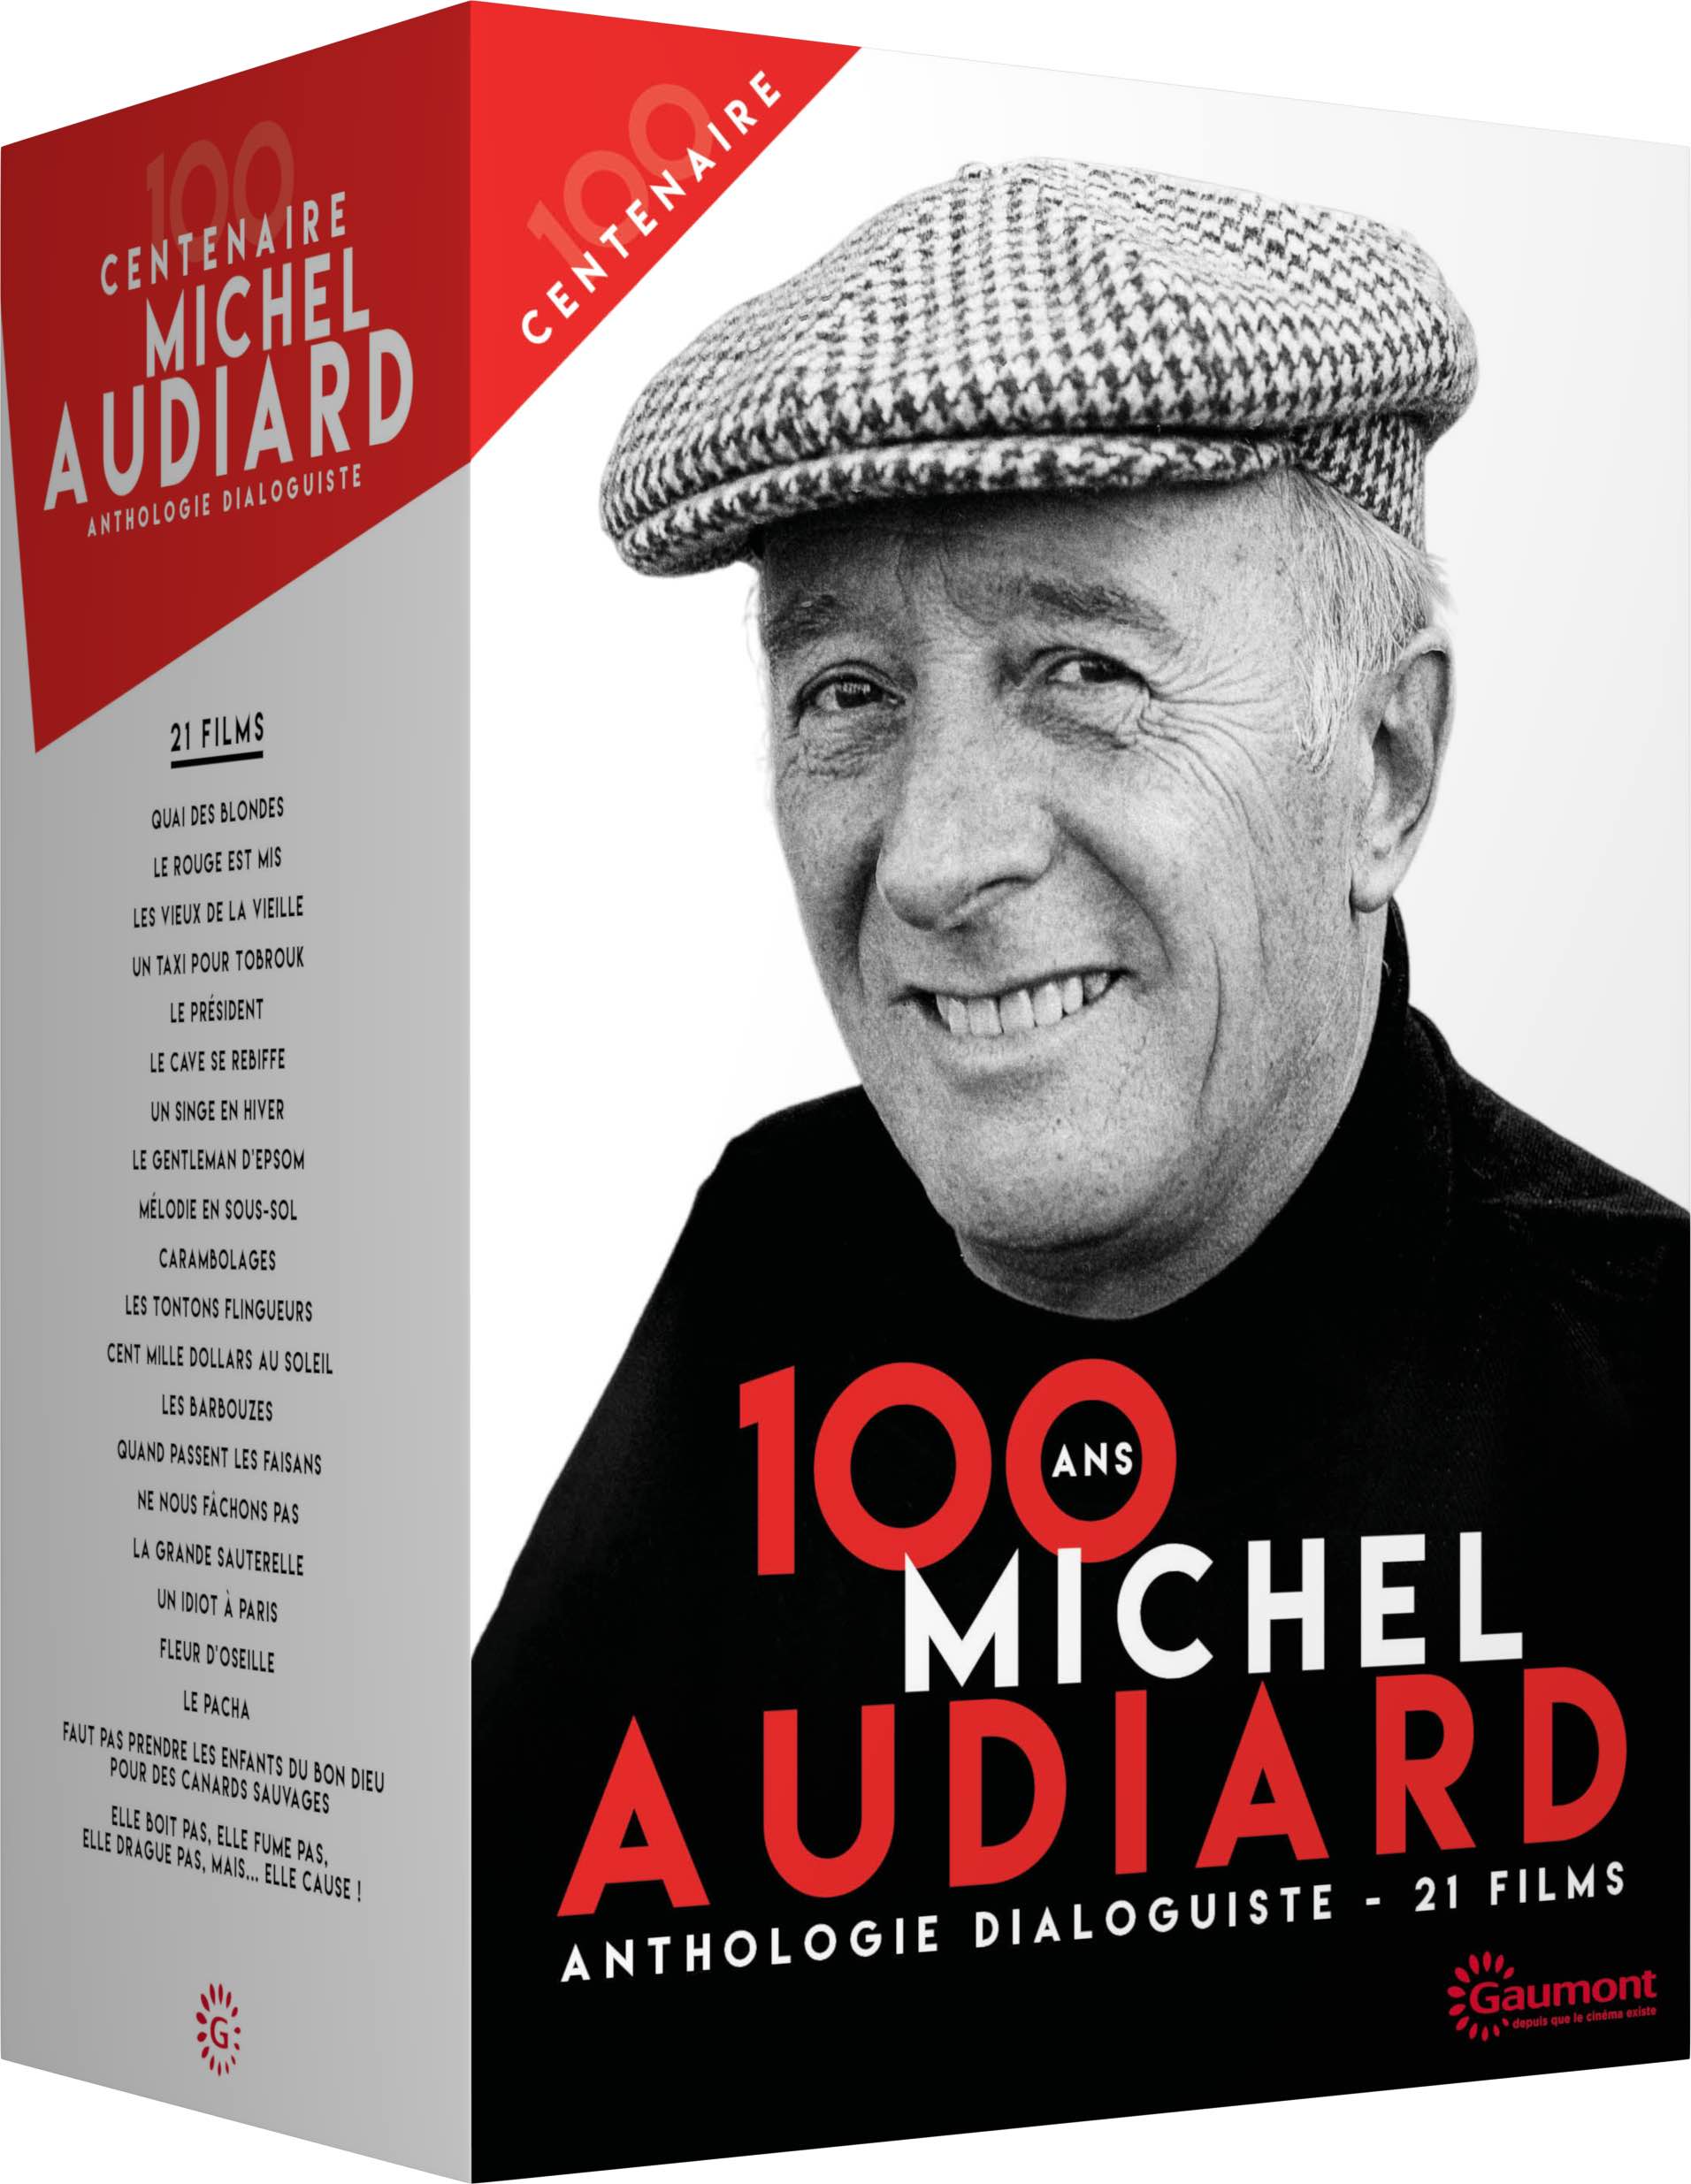 Centenaire Michel Audiard - Anthologie dialoguiste - 21 films - Édition Collector Limitée et Numérotée